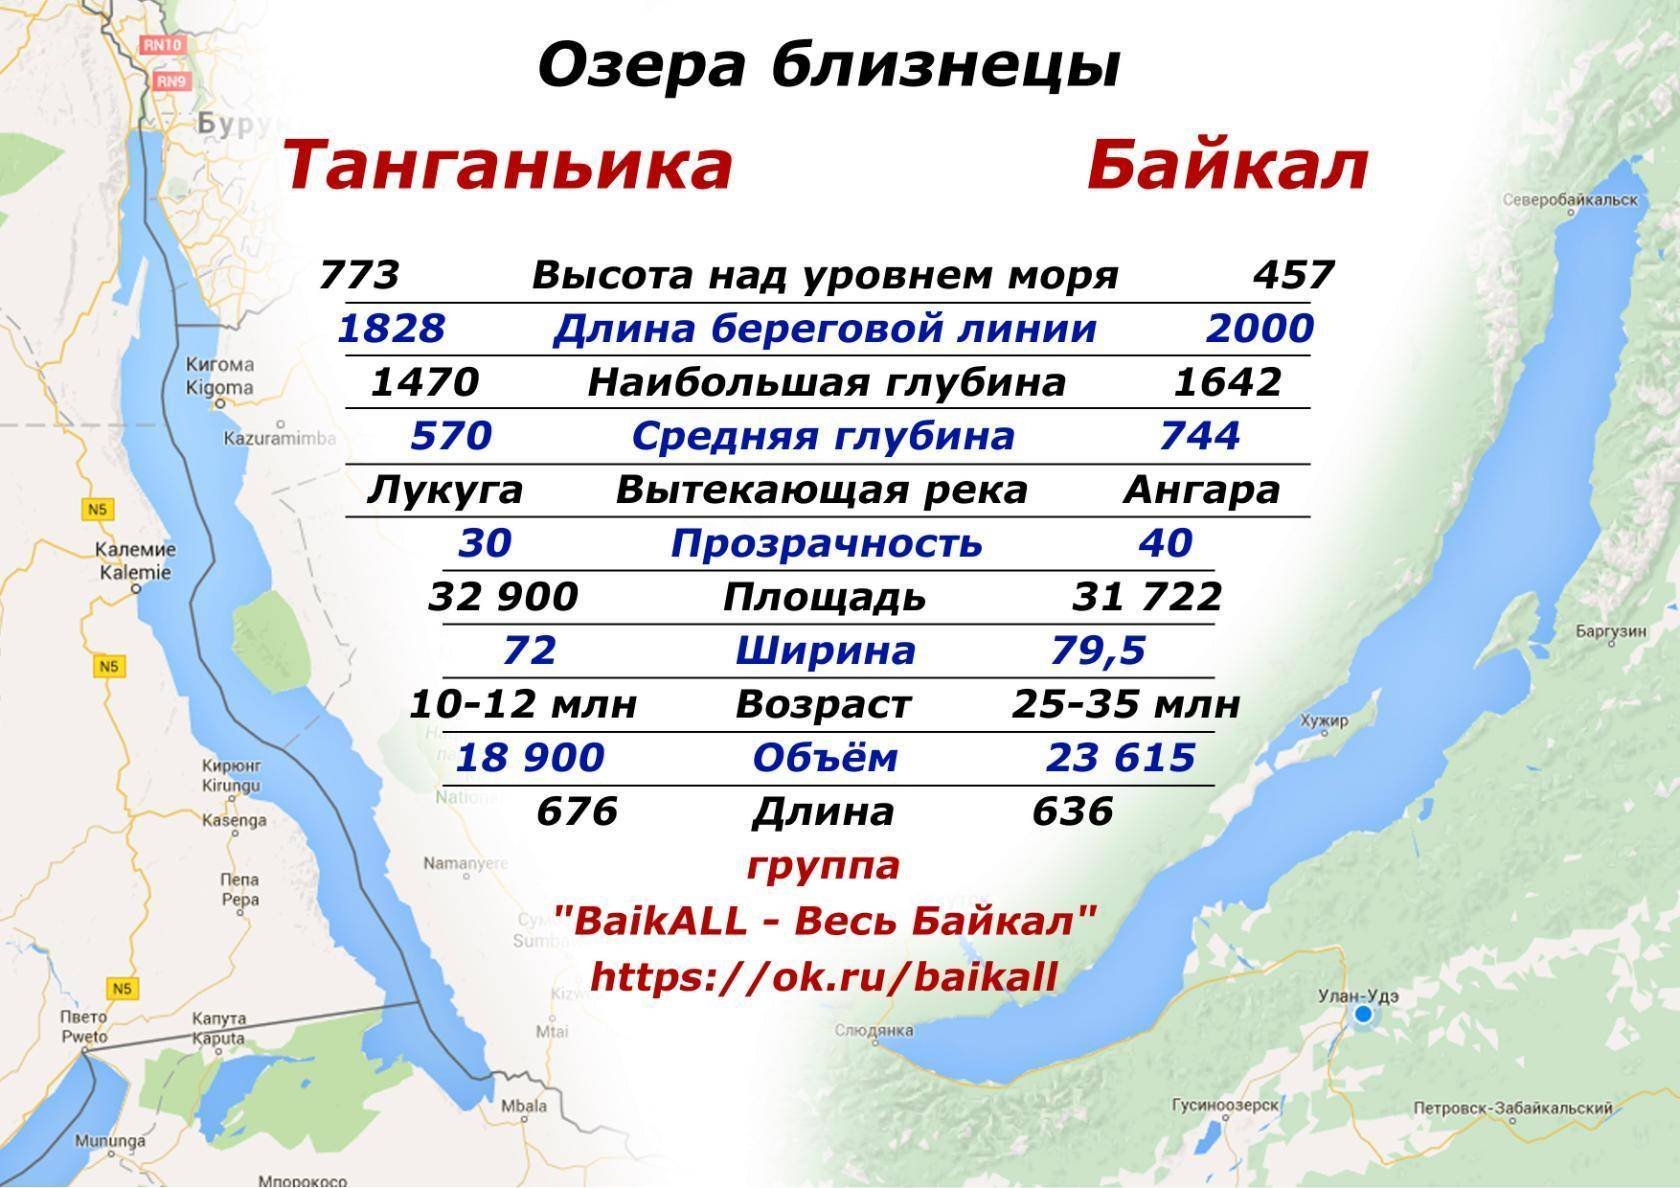 Сколько протяженность сочи в километрах. Озеро Танганьика и Байкал сравнение. Средняя глубина озера Танганьика. Озеро Танганьика глубина. Глубина озера Байкал.